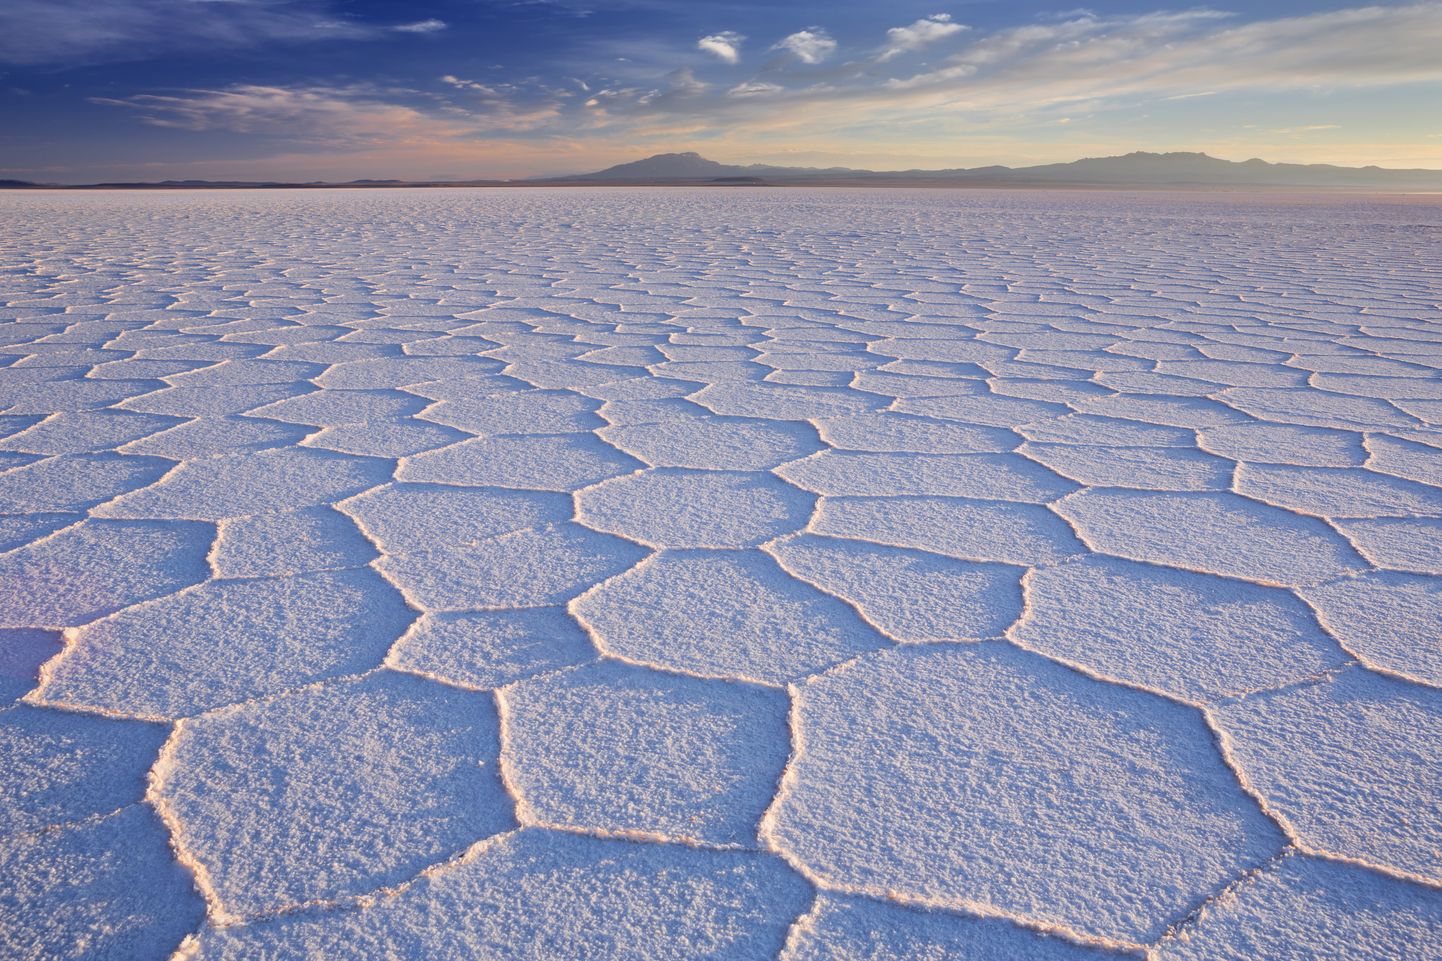 Maailma suurim soolakõrb Salar de Uyuni Boliivias. Näha on kuusnurkset mustrit